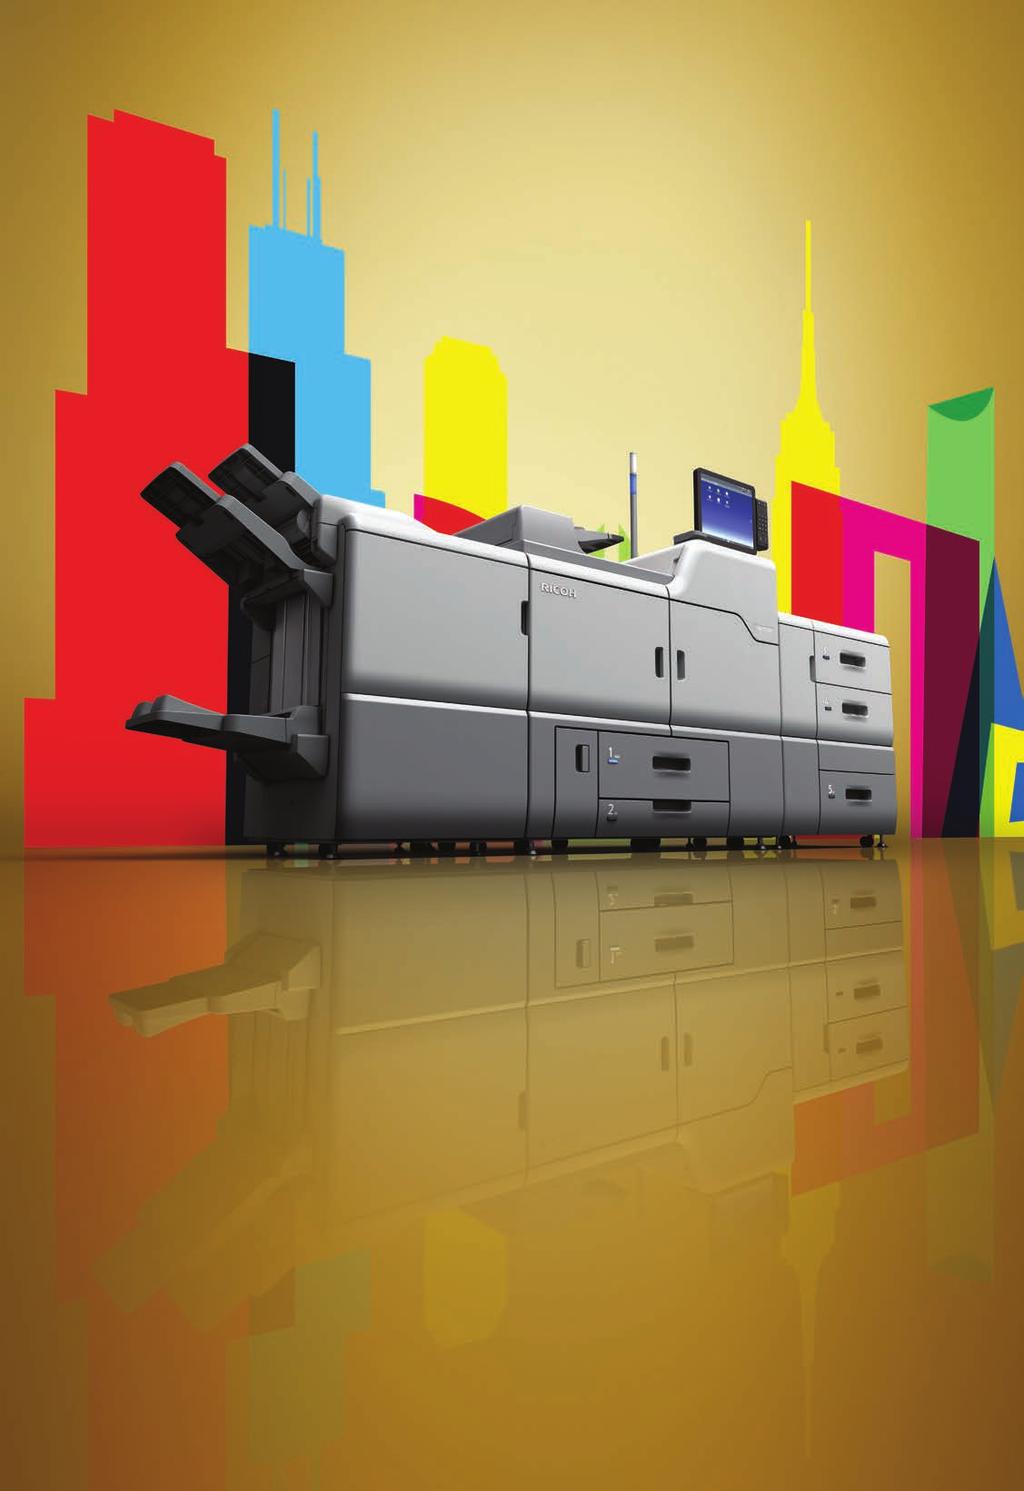 La stampante migliore di sempre Per essere sempre un passo avanti servono prestazioni e valore senza compromessi, e questo è ciò che viene offerto dalla serie Ricoh Pro C7200s.